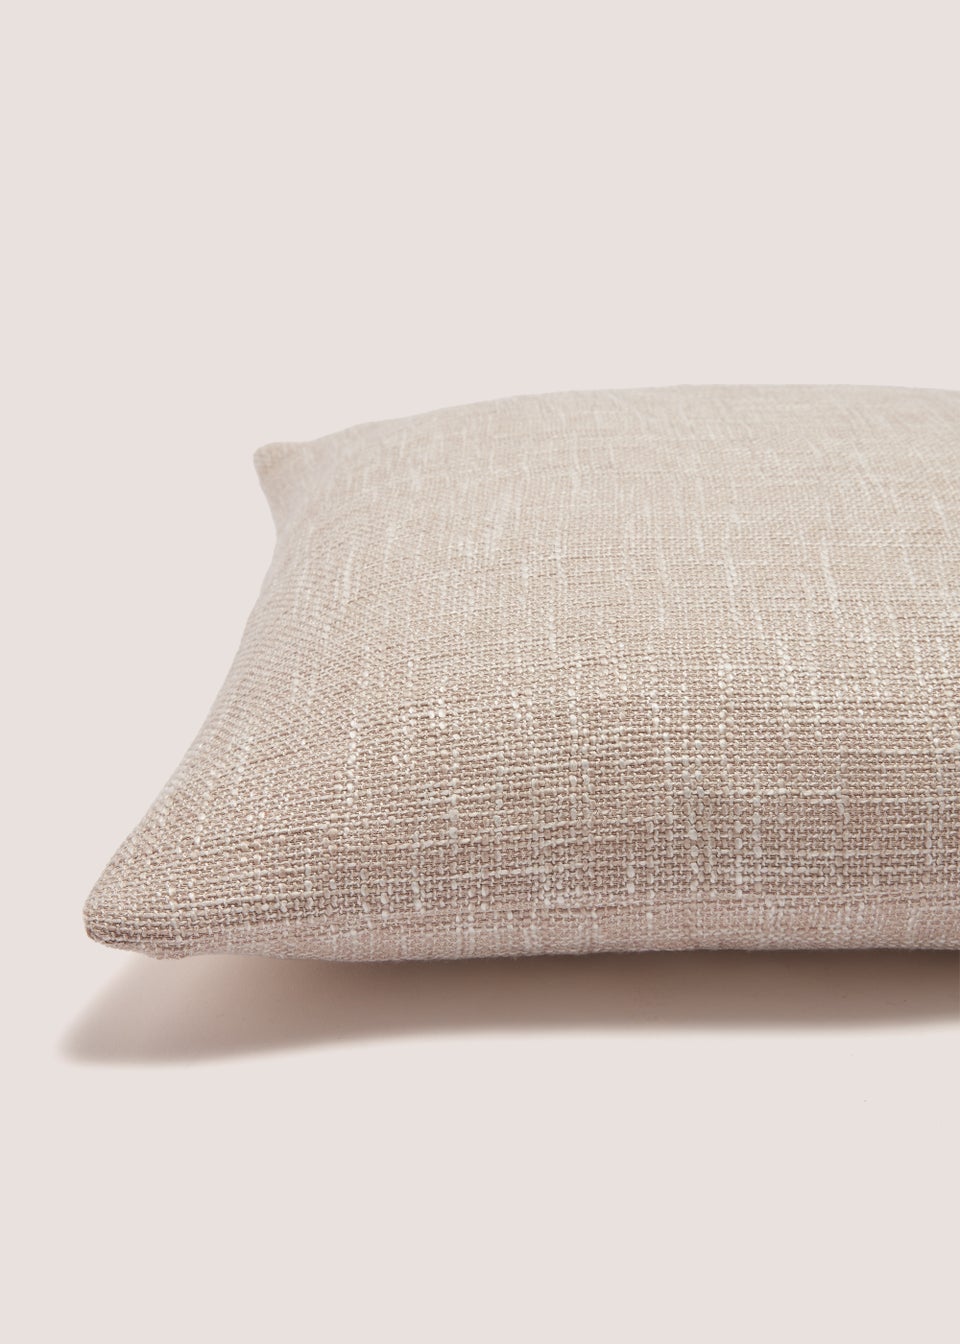 Neutral Marl Textured Cushion (43cm x 43cm)